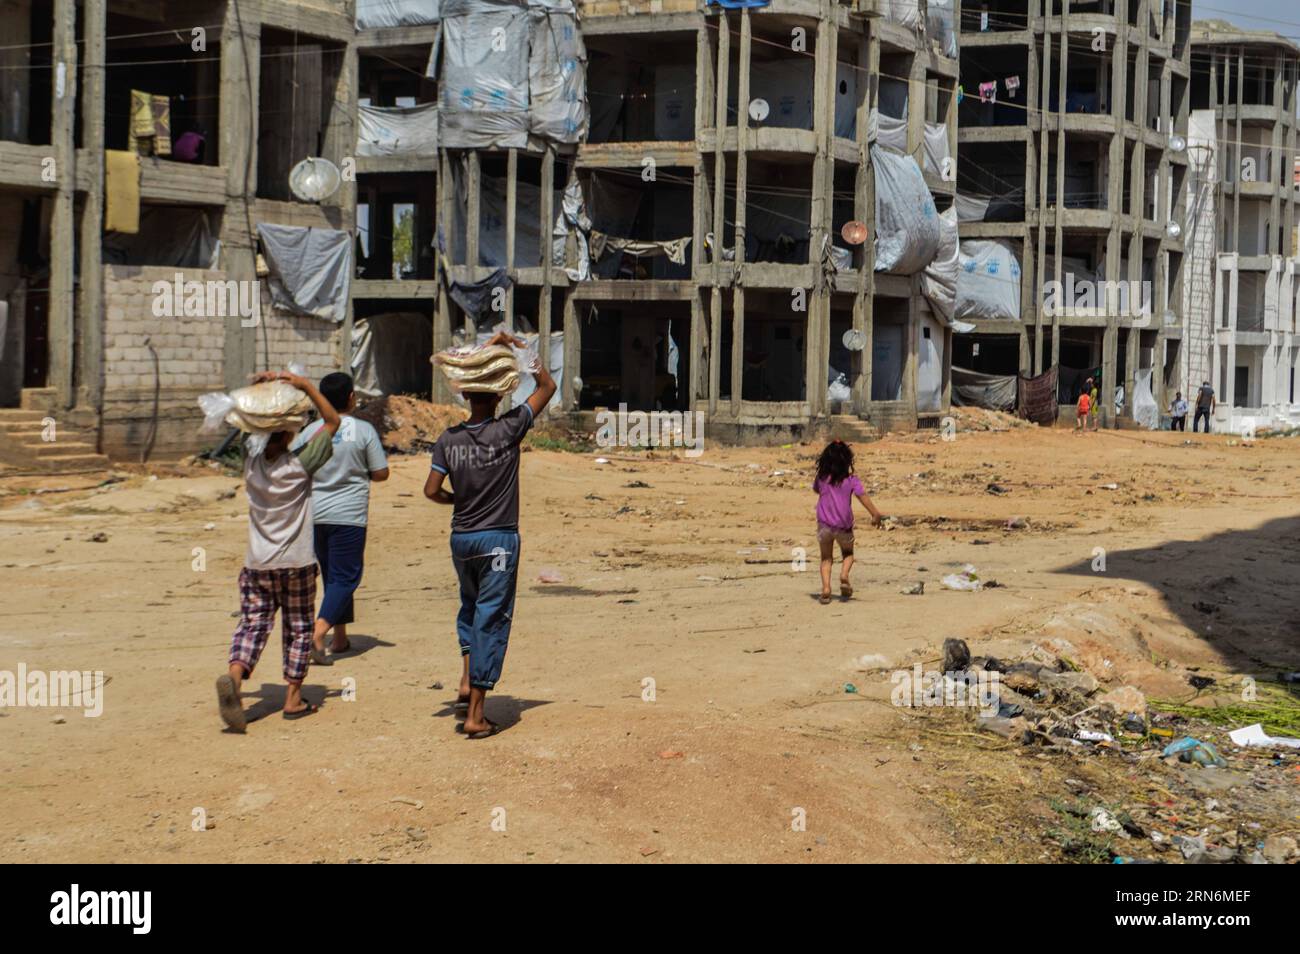 (150801) -- ALEPPO, 1. August 2015 -- vertriebene syrische Familien versammeln sich am 30. Juli 2015, um Hilfe von humanitären Organisationen im zerrütteten Bezirk Hamadaniyeh, Aleppo, Nordsyrien, zu sammeln. Aleppo, die größte Stadt Syriens und einst ein Wirtschaftszentrum, wurde zwischen den Rebellen im Osten und den Regierungstruppen in den westlichen Teilen der Stadt zerrissen, während Teile der nördlichen Landschaft unter der Kontrolle DES IS stehen. Die Aleppaner leiden unter Wasser- und Stromknappheit und schlechten sanitären Einrichtungen. SYRIEN-ALEPPO-VERTRIEBENE AbdxFayad PUBLICATIONxNOTxINxCHN 150801 Aleppo Stockfoto